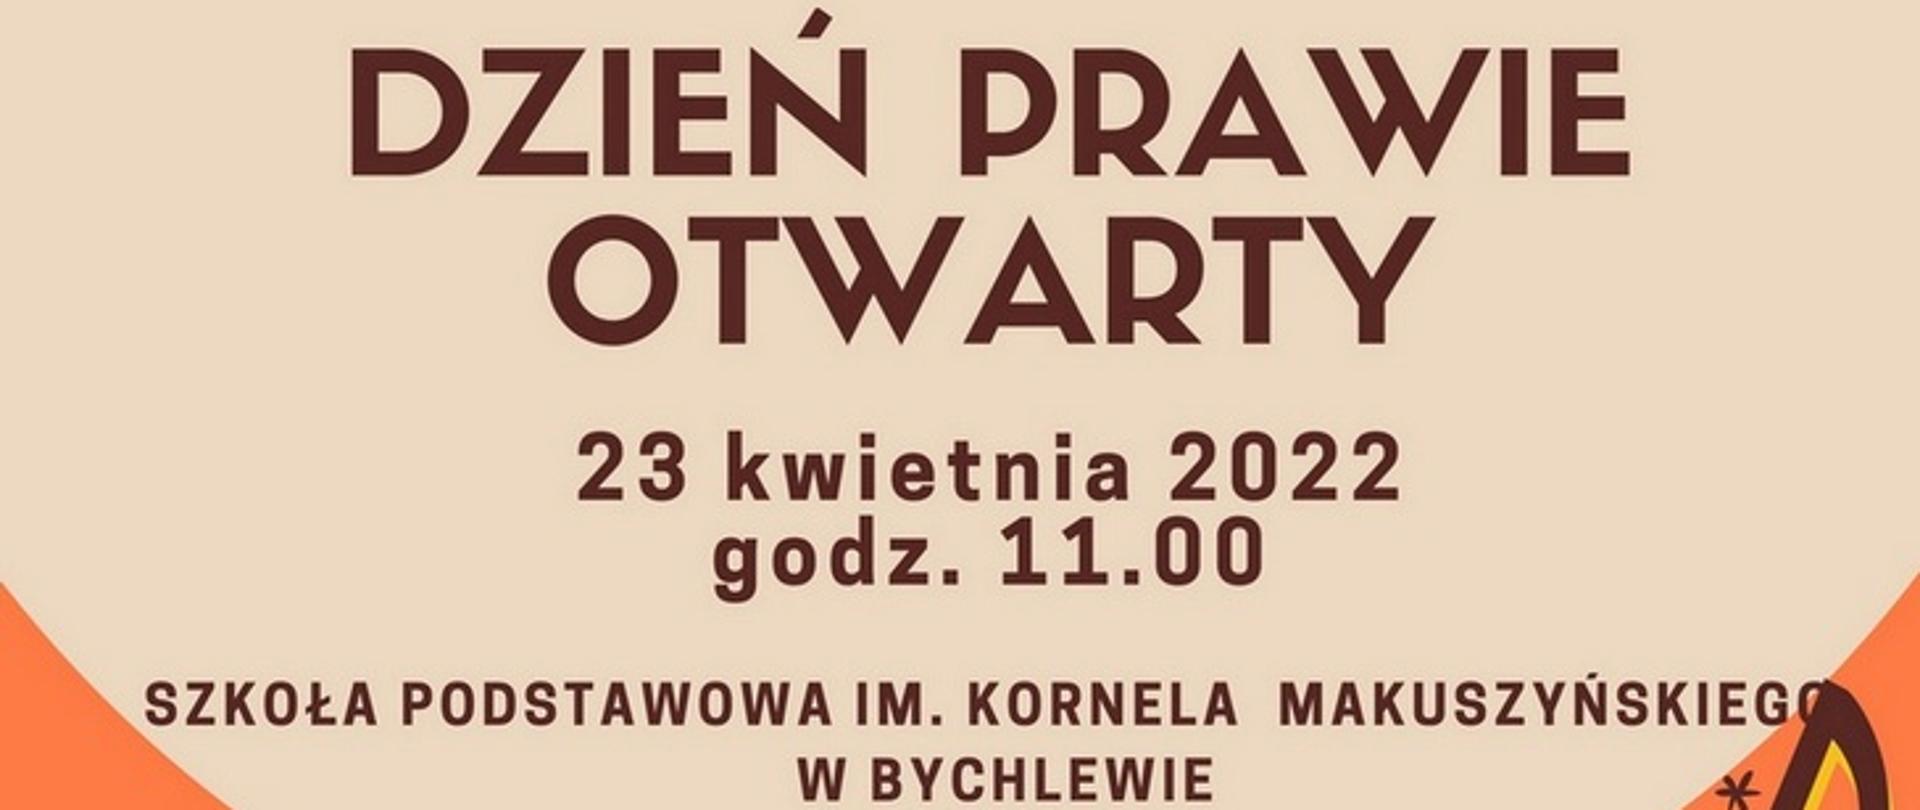 Dzień otwarty 23 kwietnia 2022 roku godzina 11 Miejsce: Szkoła Podstawowa Im. Kornela Makuszyńskiego w Bychlewie.